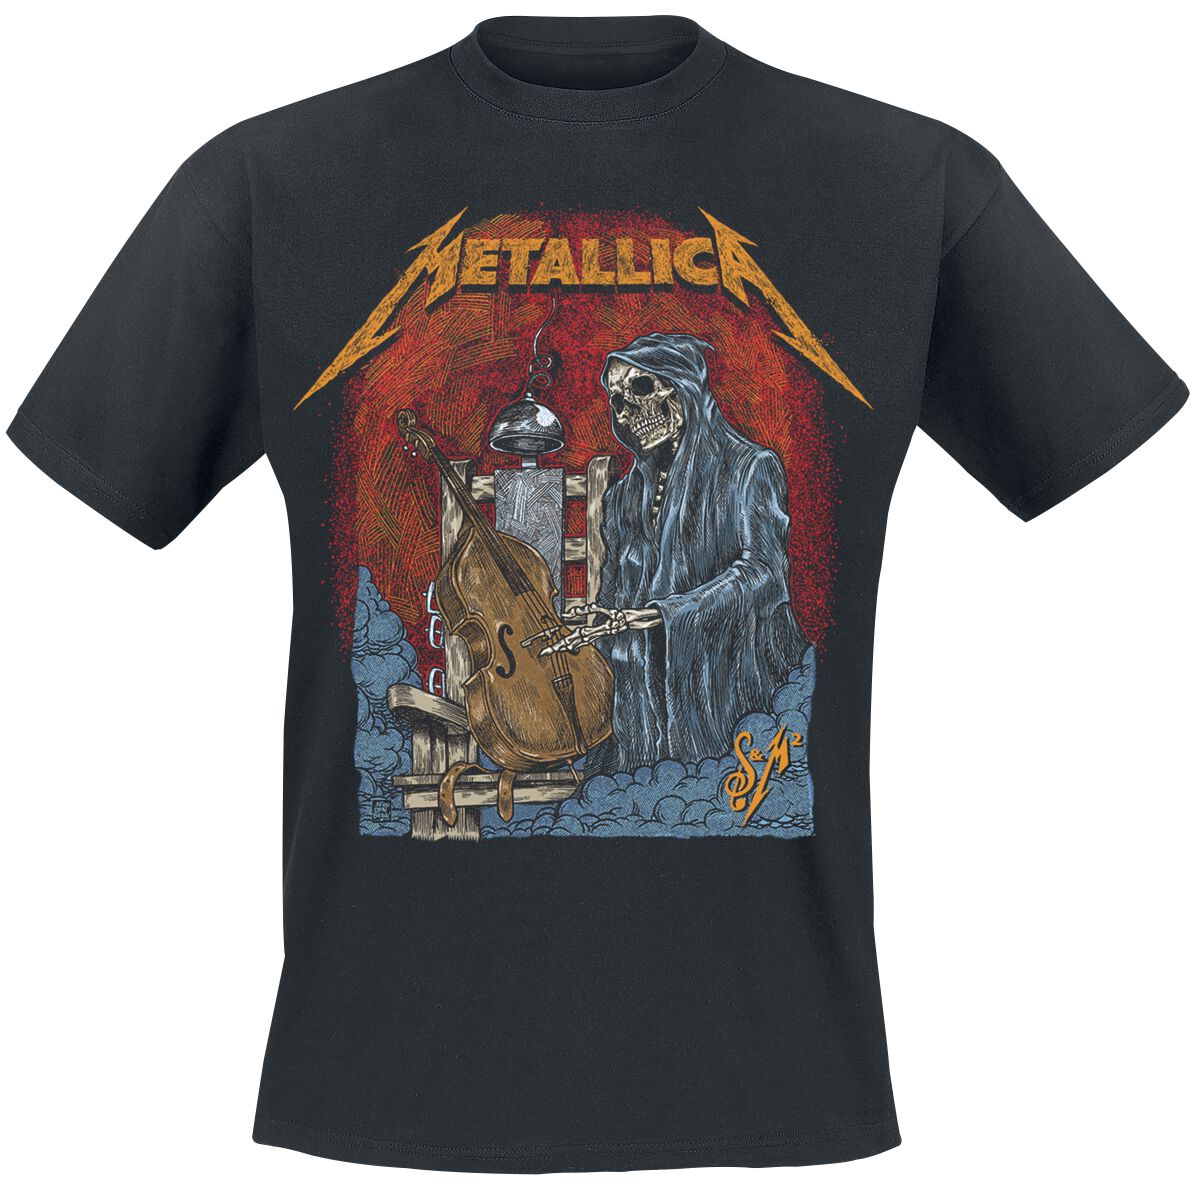 Metallica T-Shirt - S&M2 Cello Reaper - S bis 5XL - für Männer - Größe XL - schwarz  - Lizenziertes Merchandise!